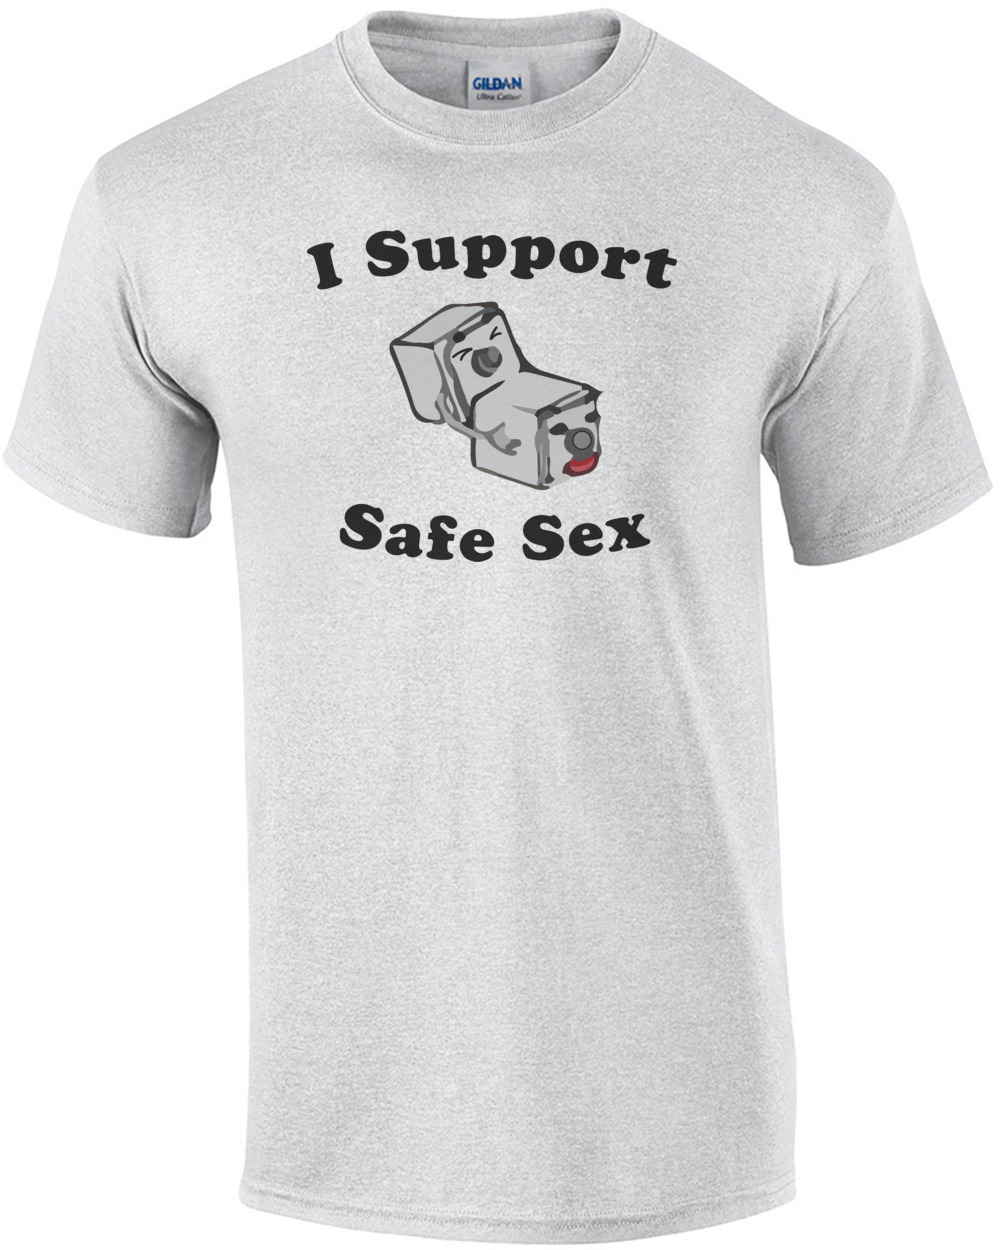 I Support Safe - Funny T-Shirt shirt